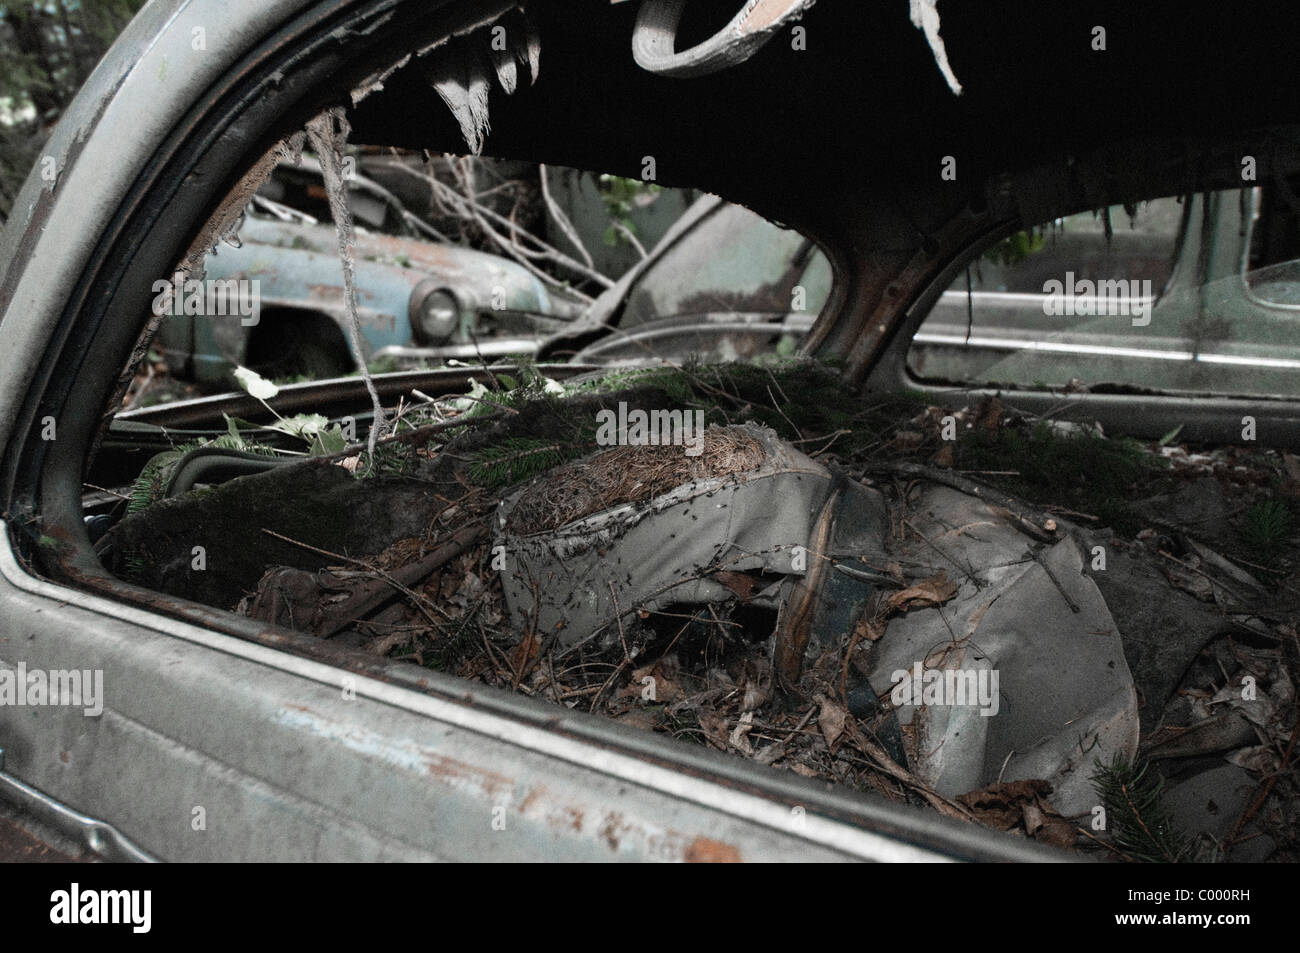 Des fourmis dans l'intérieur d'un pourri voiture accidentée à l'oldtimer à ferrailles, Kaufdorf, Suisse Banque D'Images